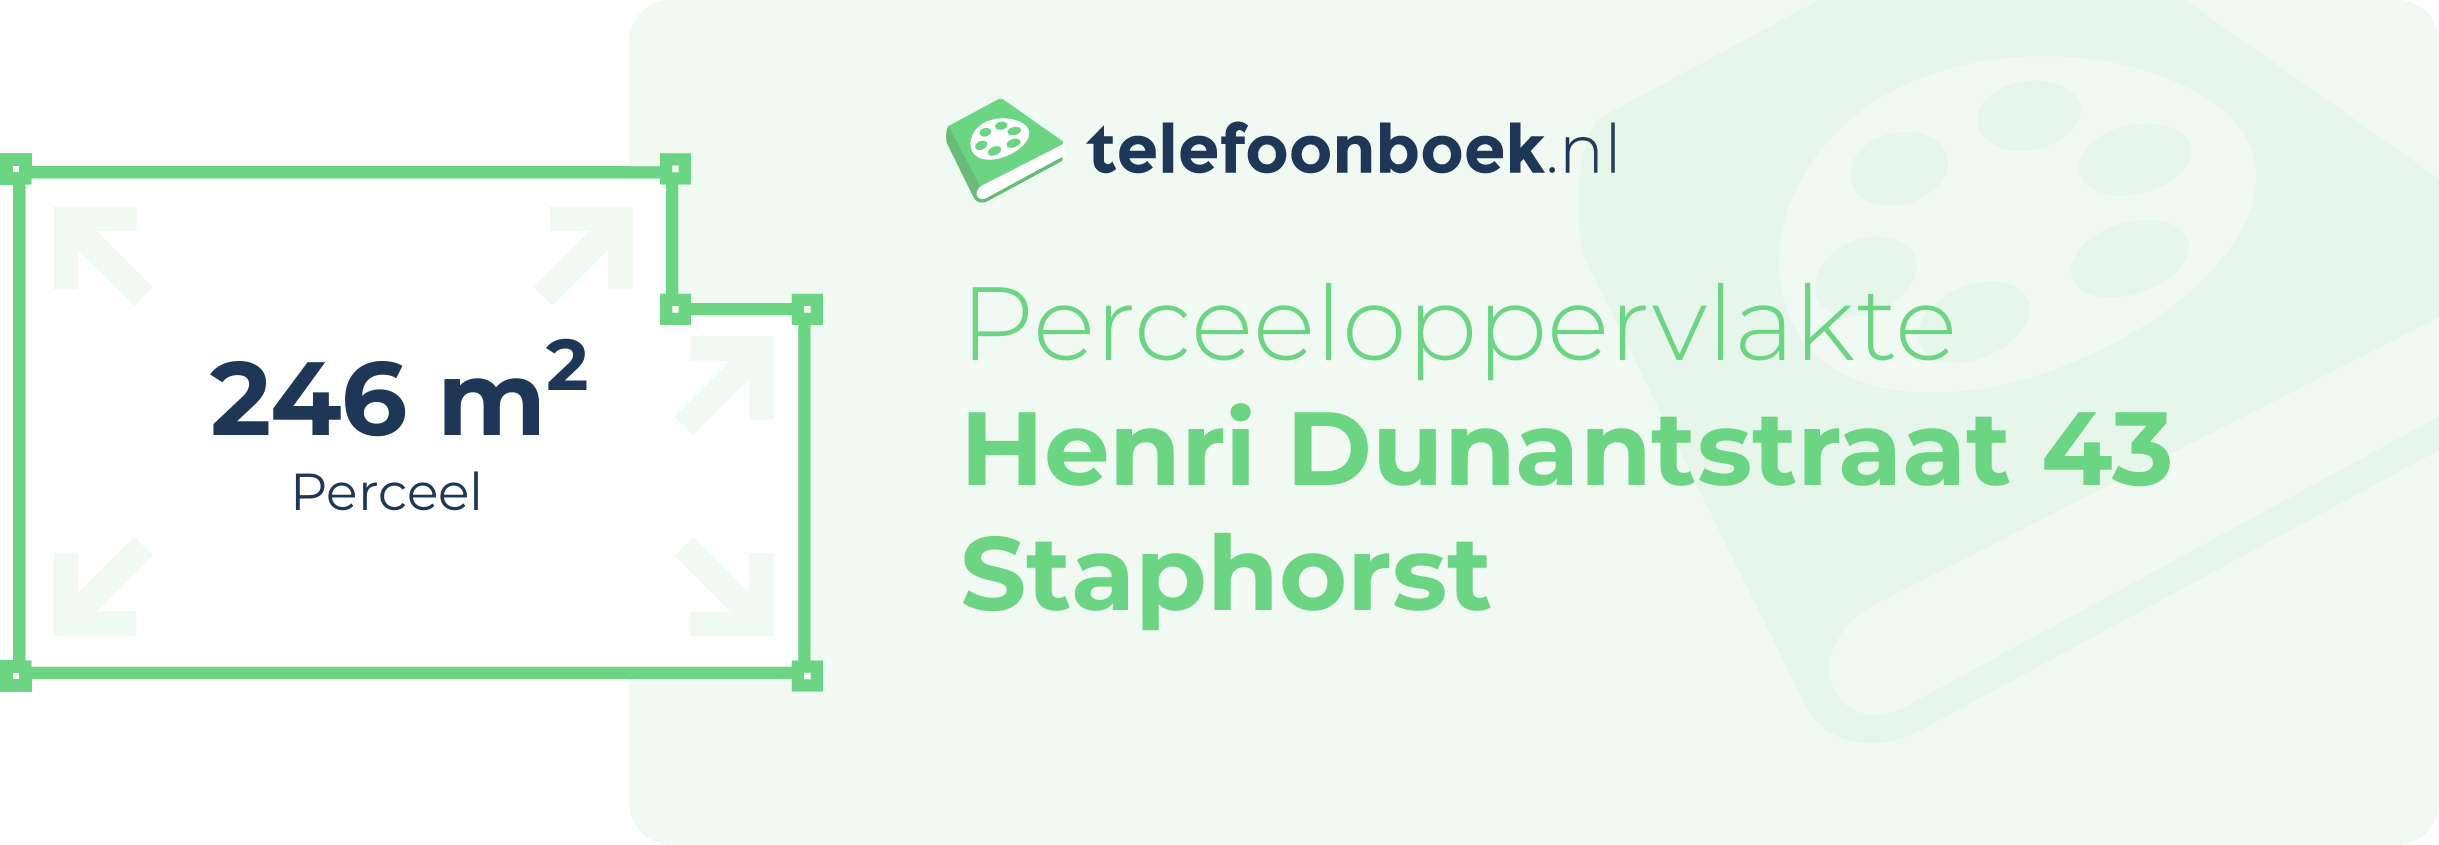 Perceeloppervlakte Henri Dunantstraat 43 Staphorst